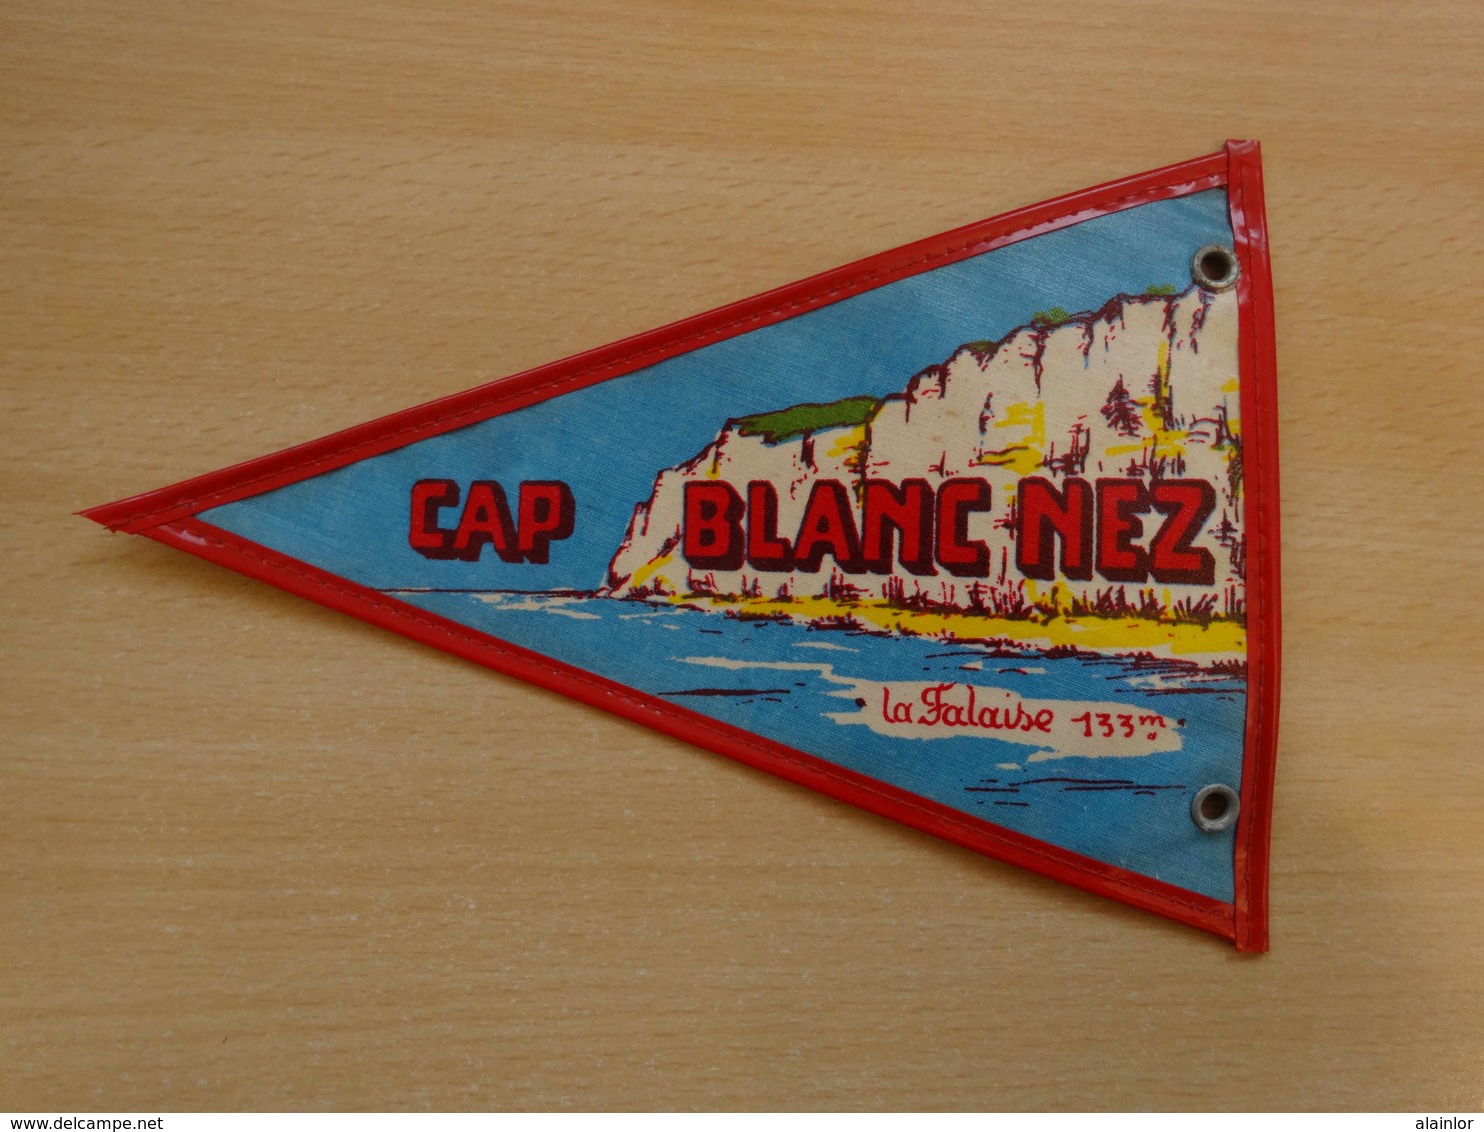 Fanion Touristique France CAP GRIS NEZ - CAP BLANC NEZ  (vintage Années 60) - (Vaantje - Wimpel - Pennant - Banderin) - Obj. 'Souvenir De'